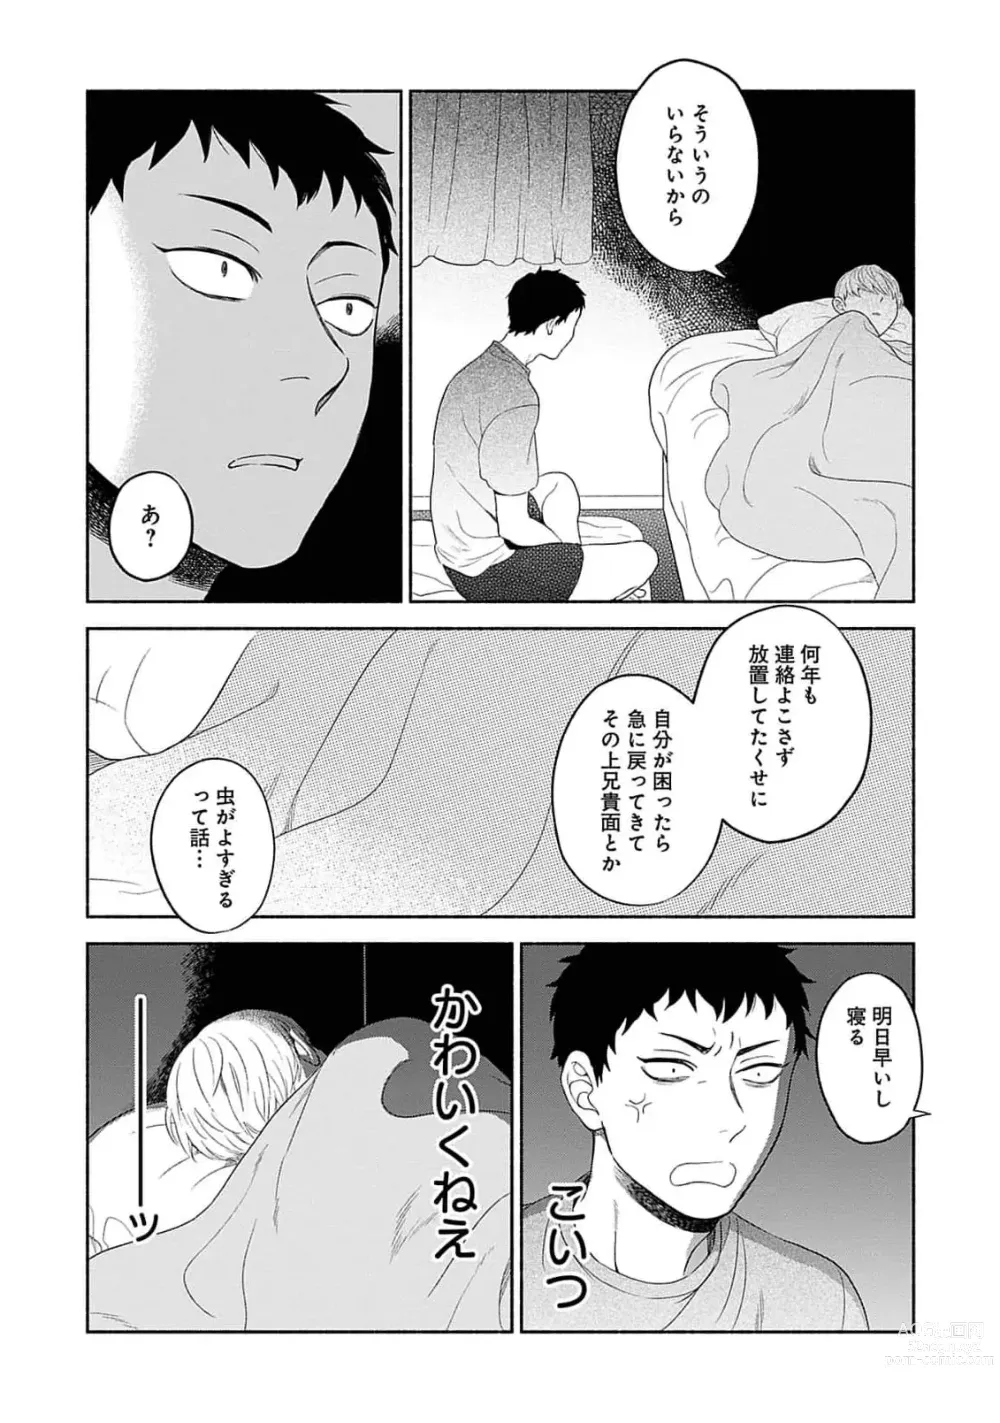 Page 14 of manga Yoru no Kyoudai